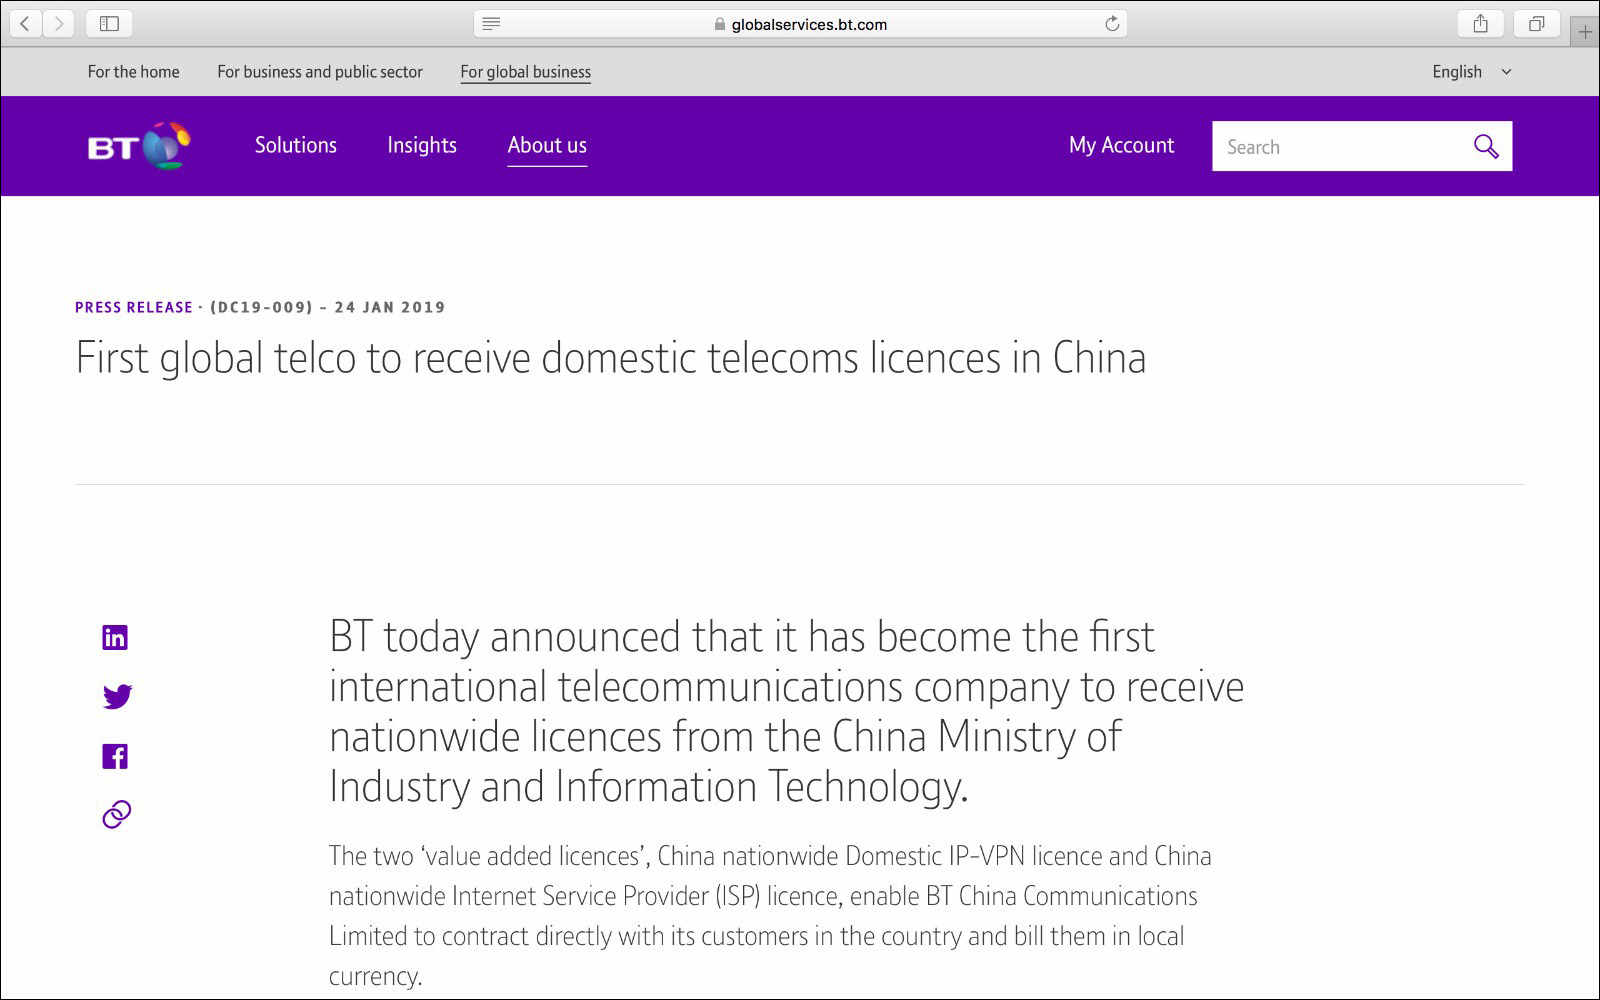 英国电信称在中国取得IP-VPN和ISP牌照